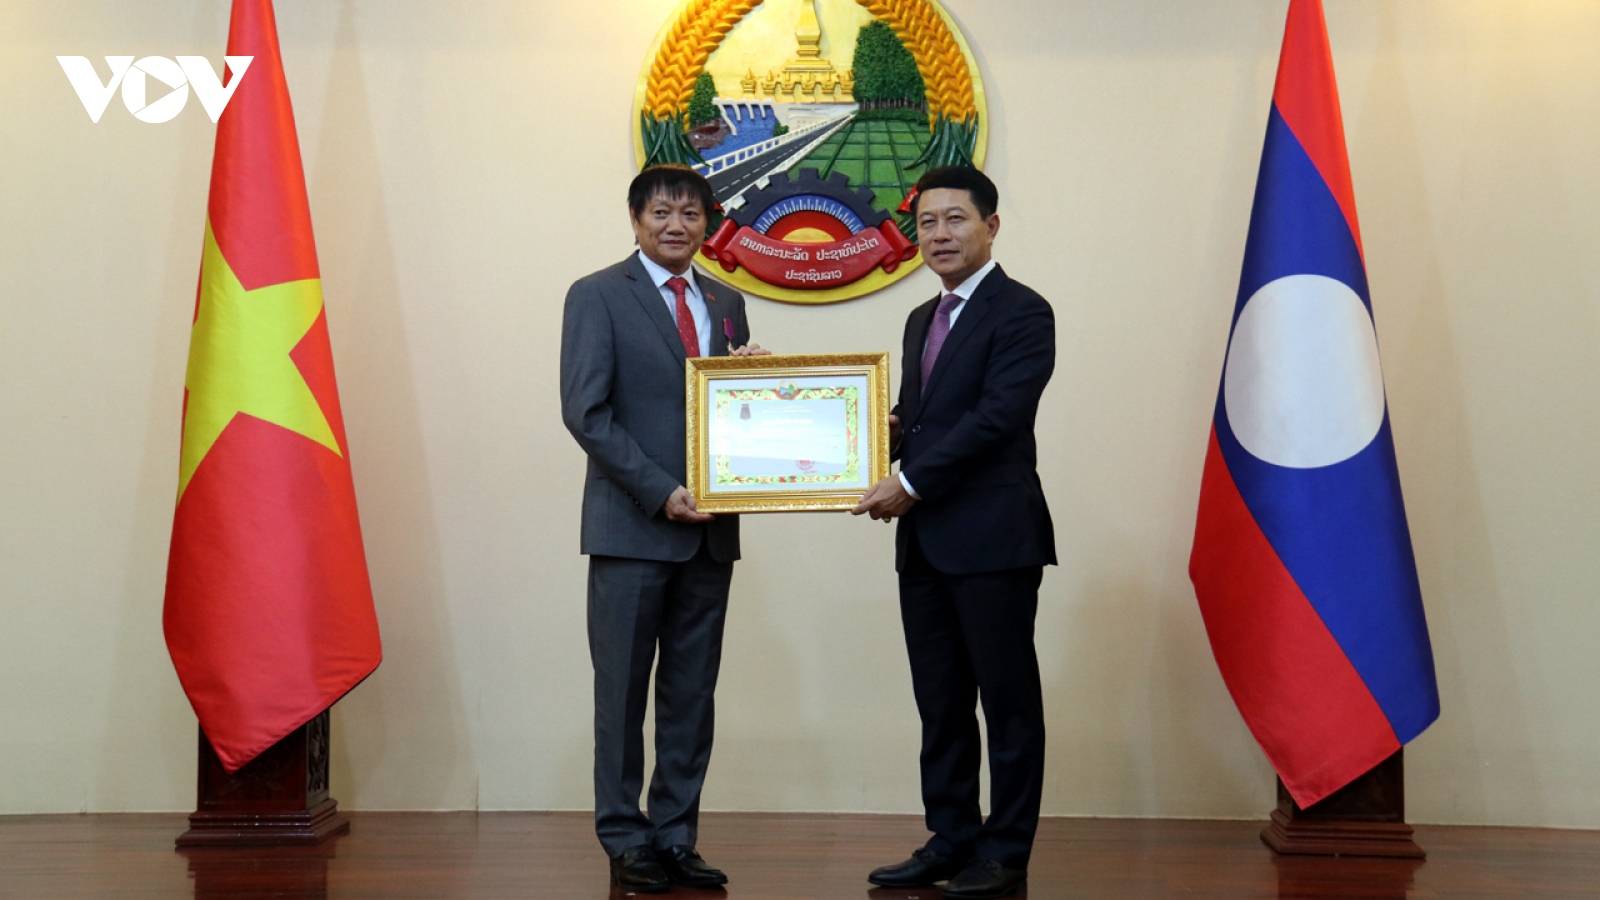 Đại sứ Việt Nam tại Lào vinh dự nhận Huân chương Itxala